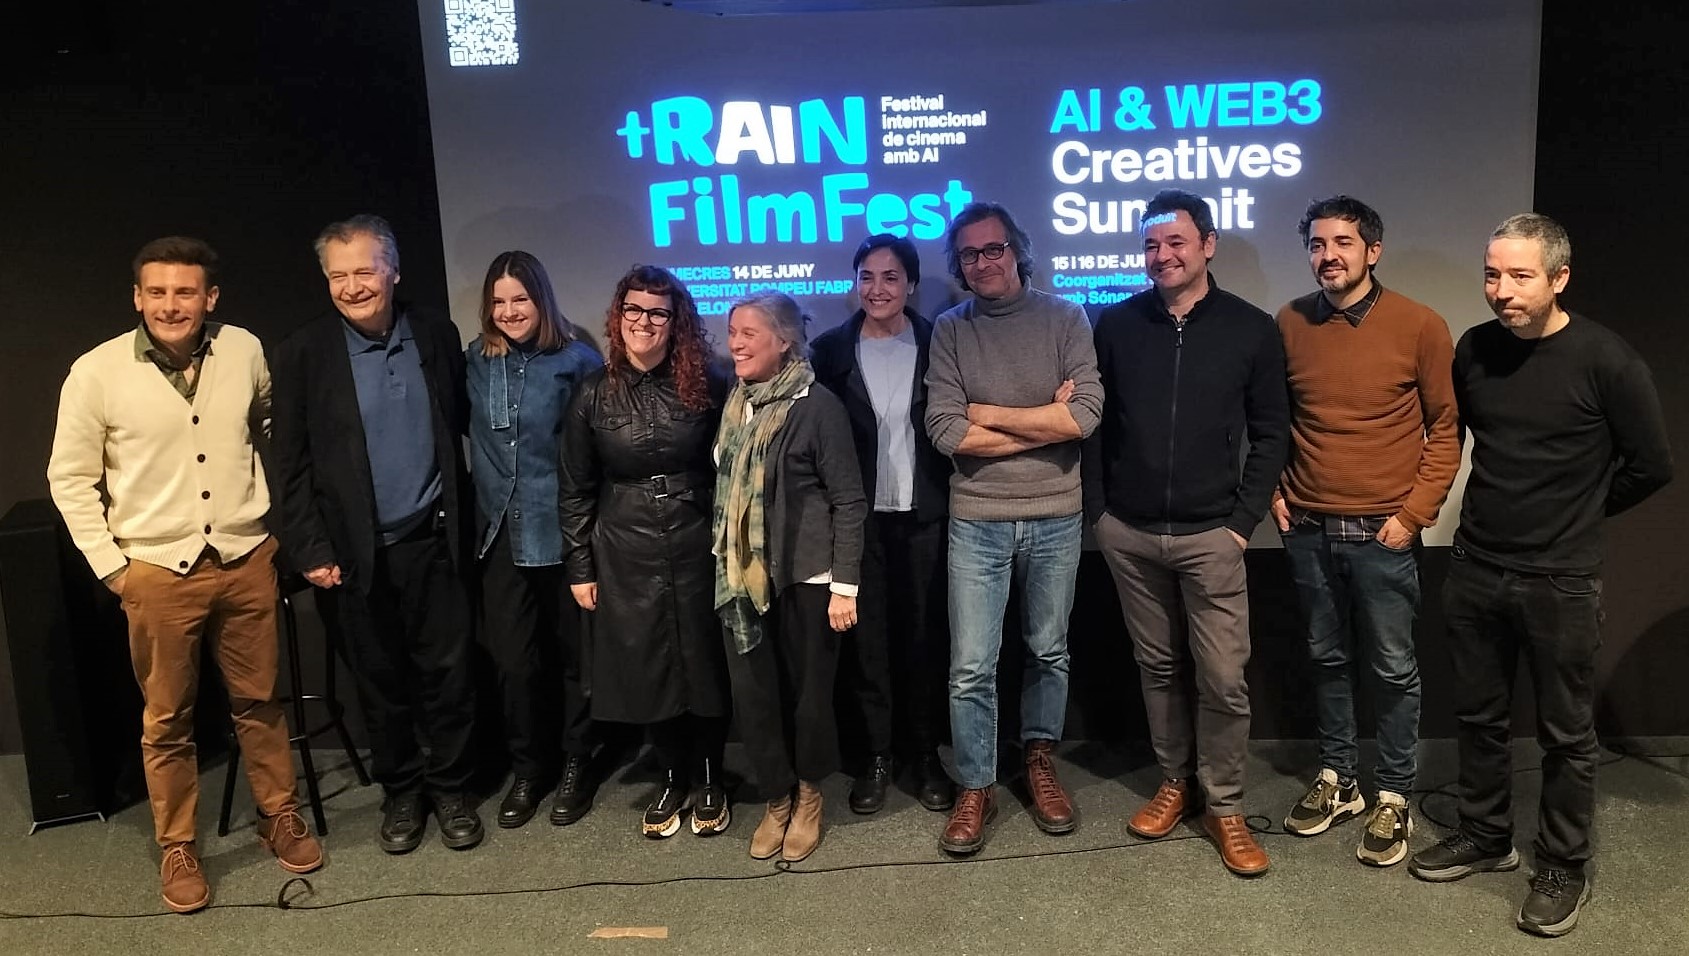 +Rain Film Fest, el primer festival europeu de films generats amb intel·ligència artificial